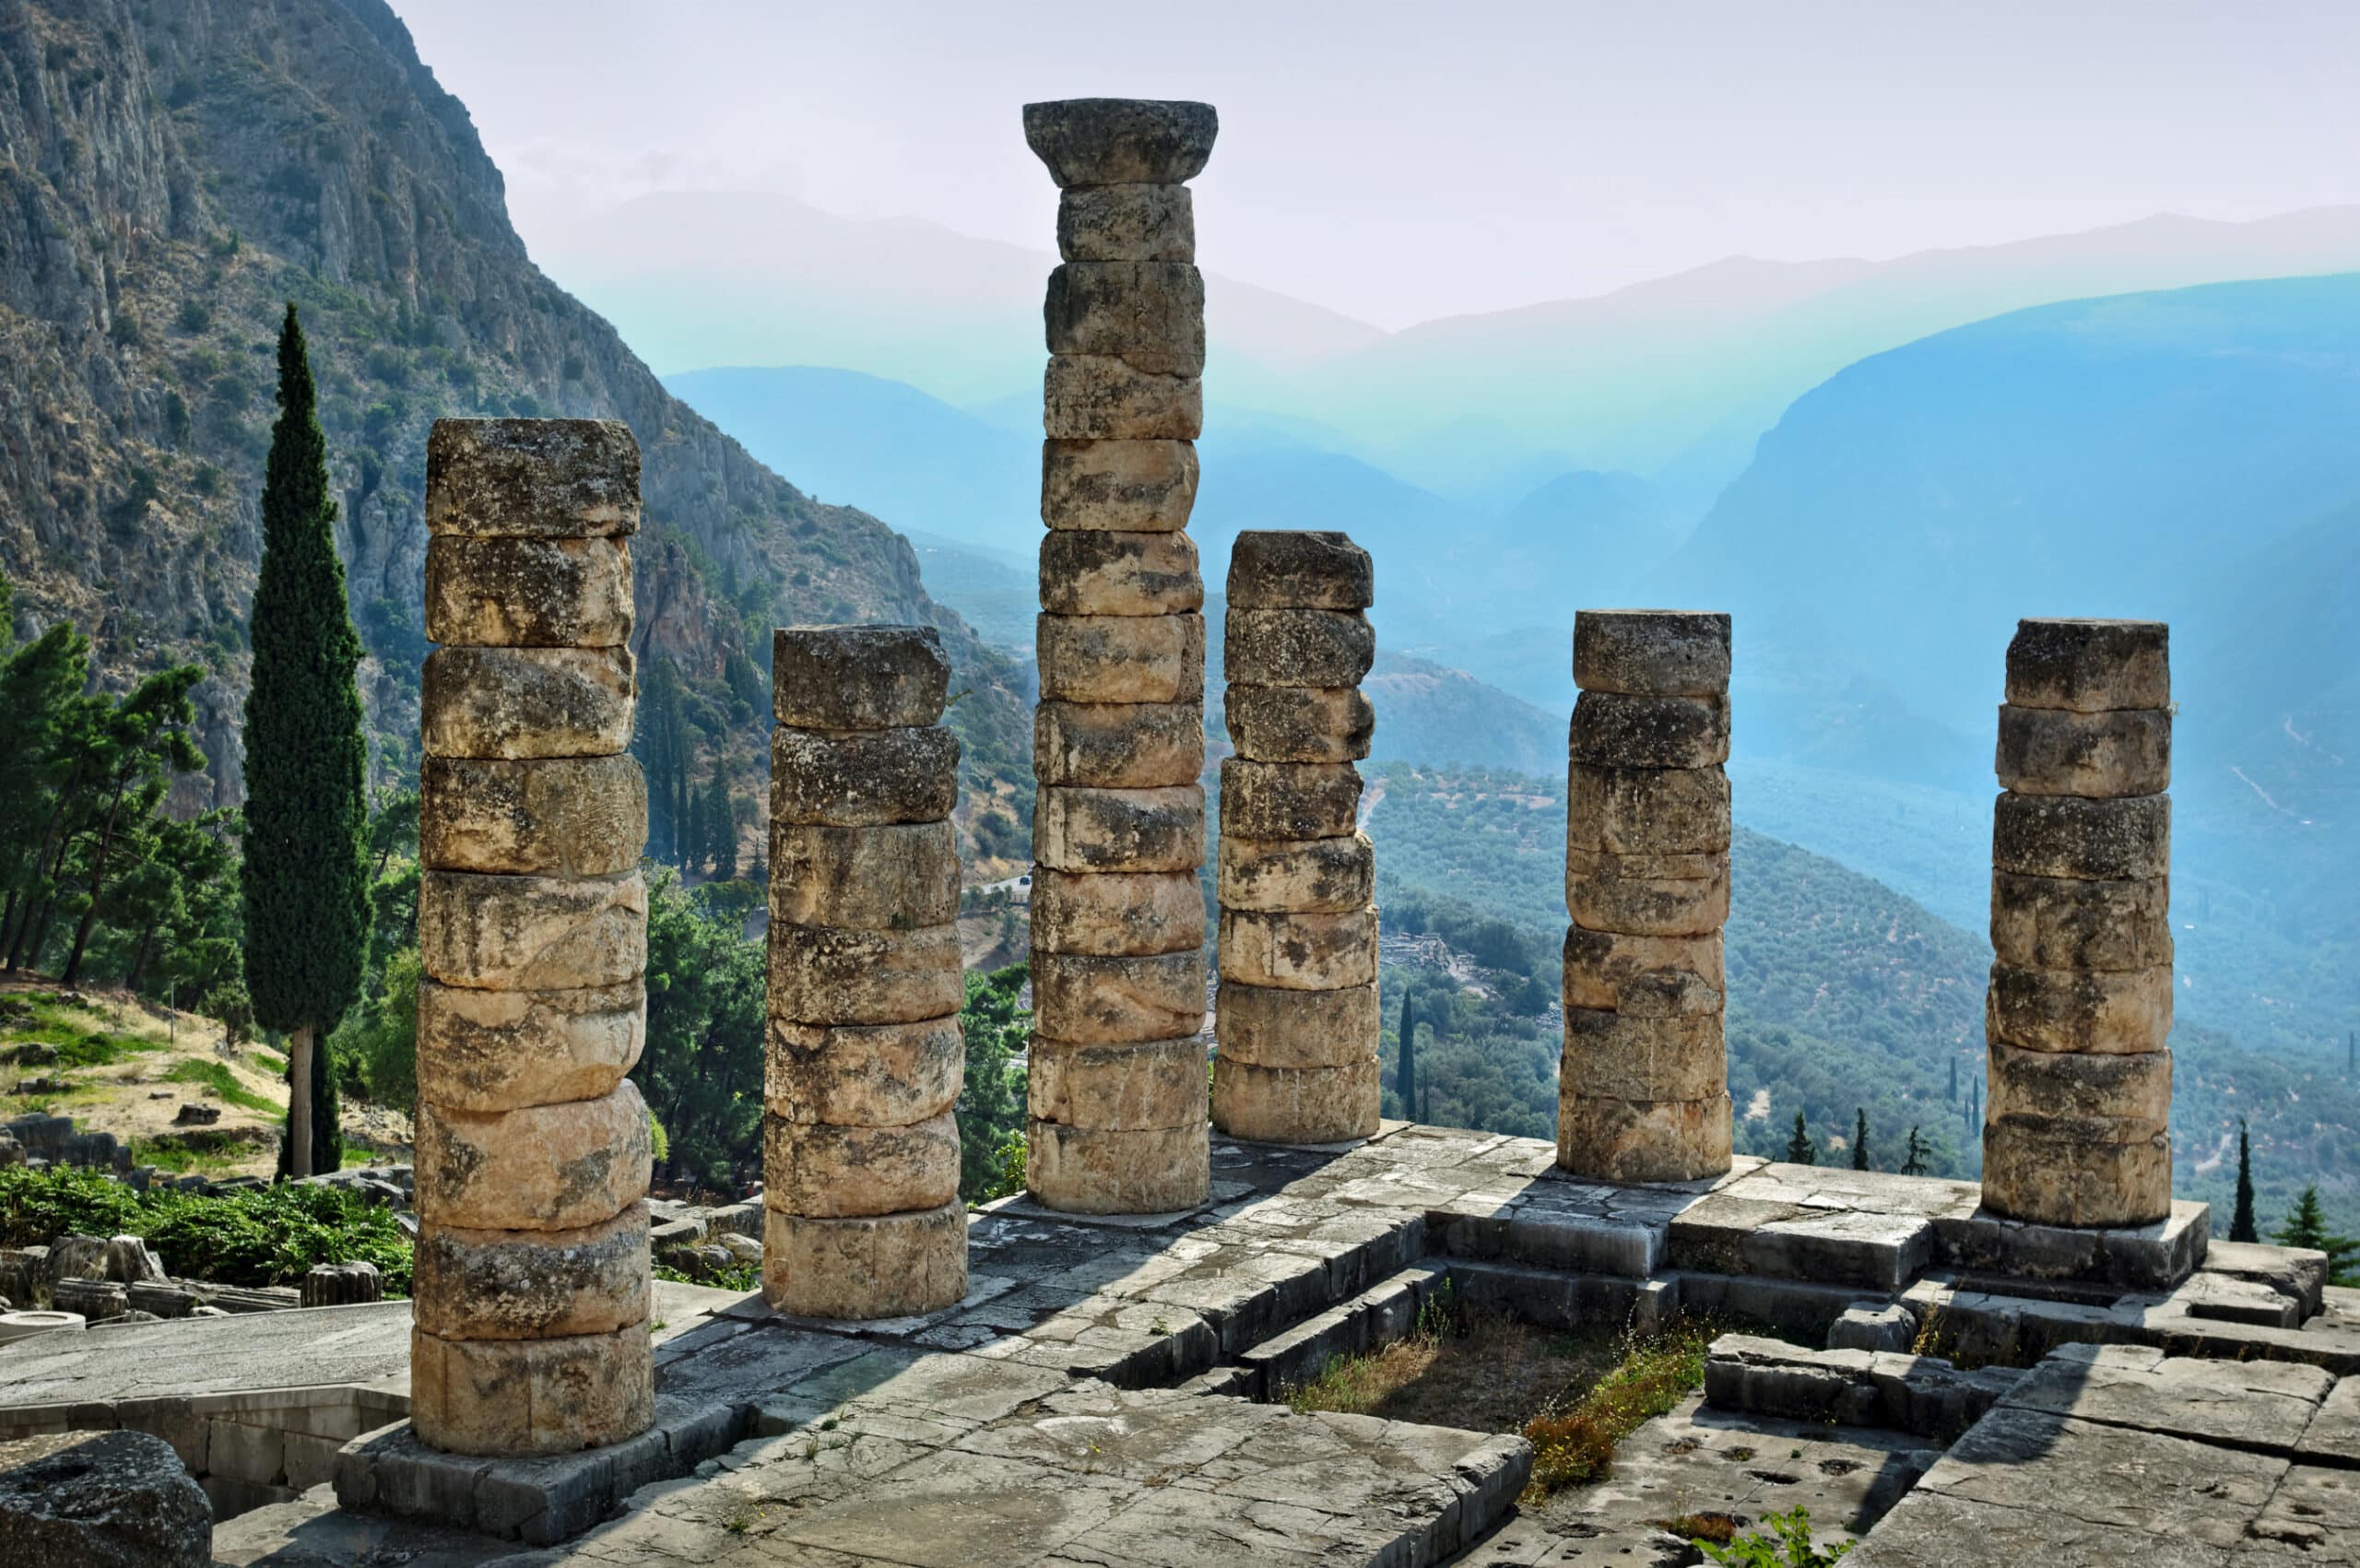 Temple of Apollo, Delphi - Entrance Fee